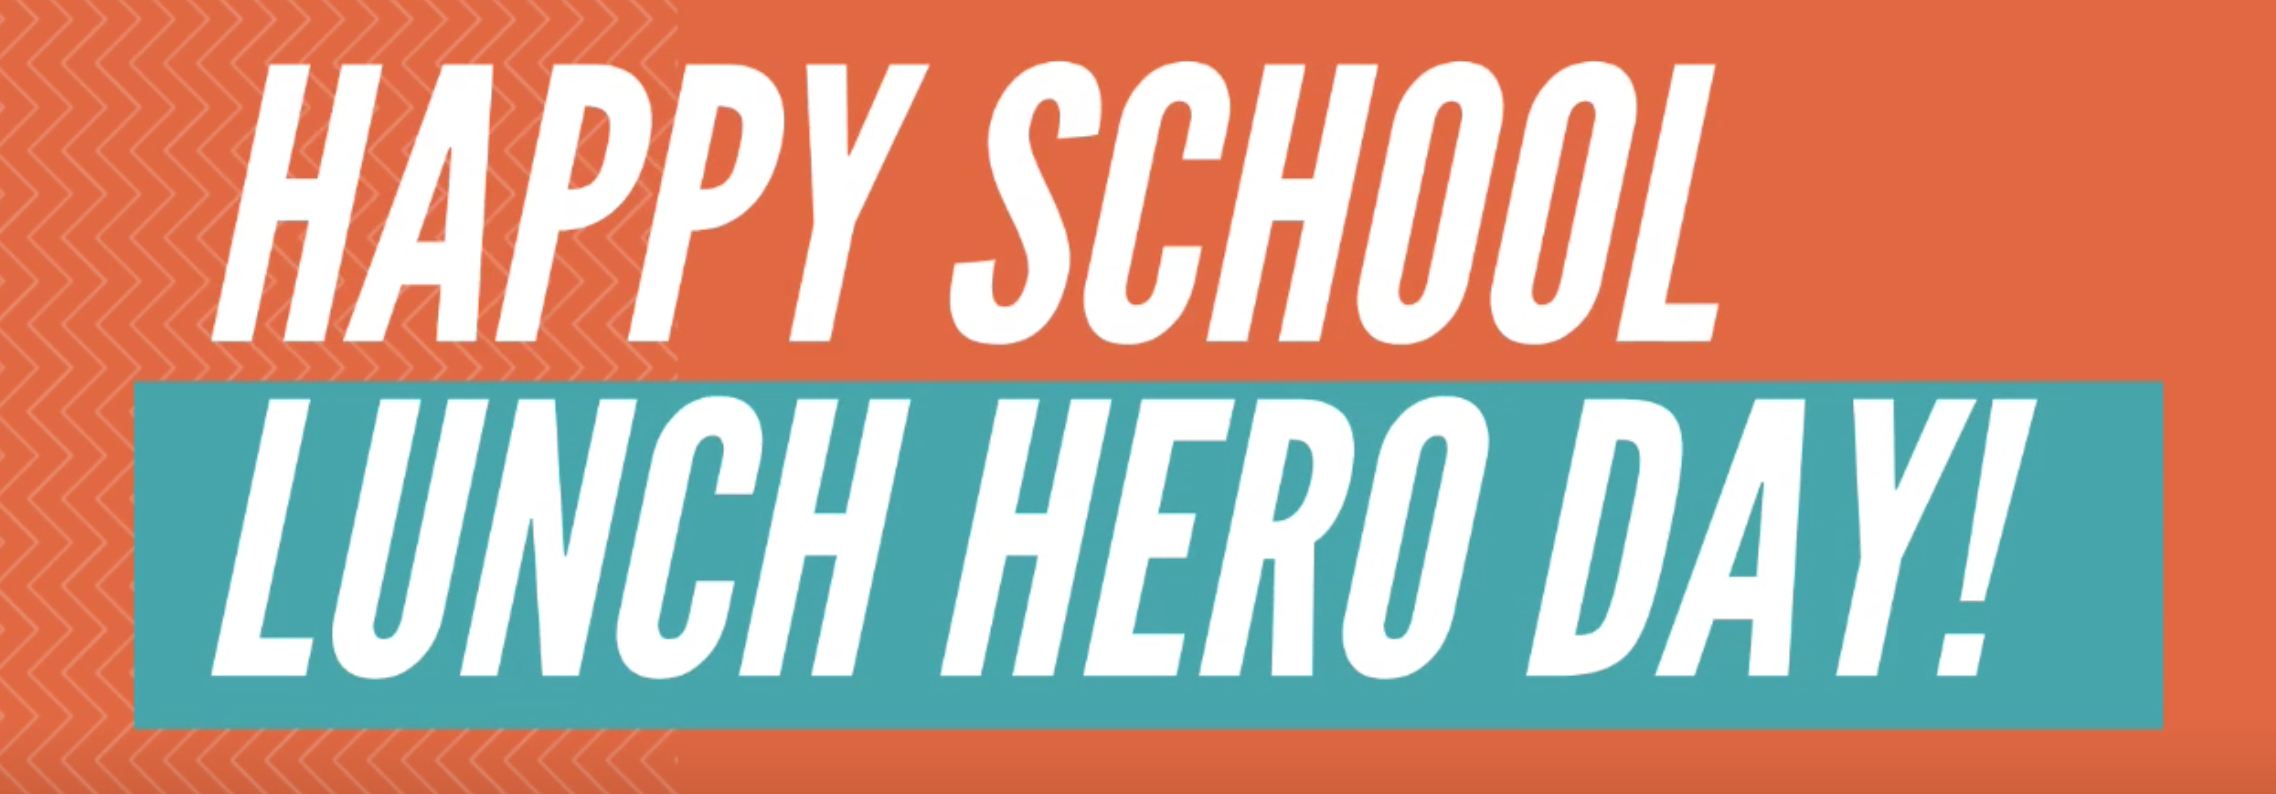 Happy School Lunch Hero Day! | Littleton Public Schools